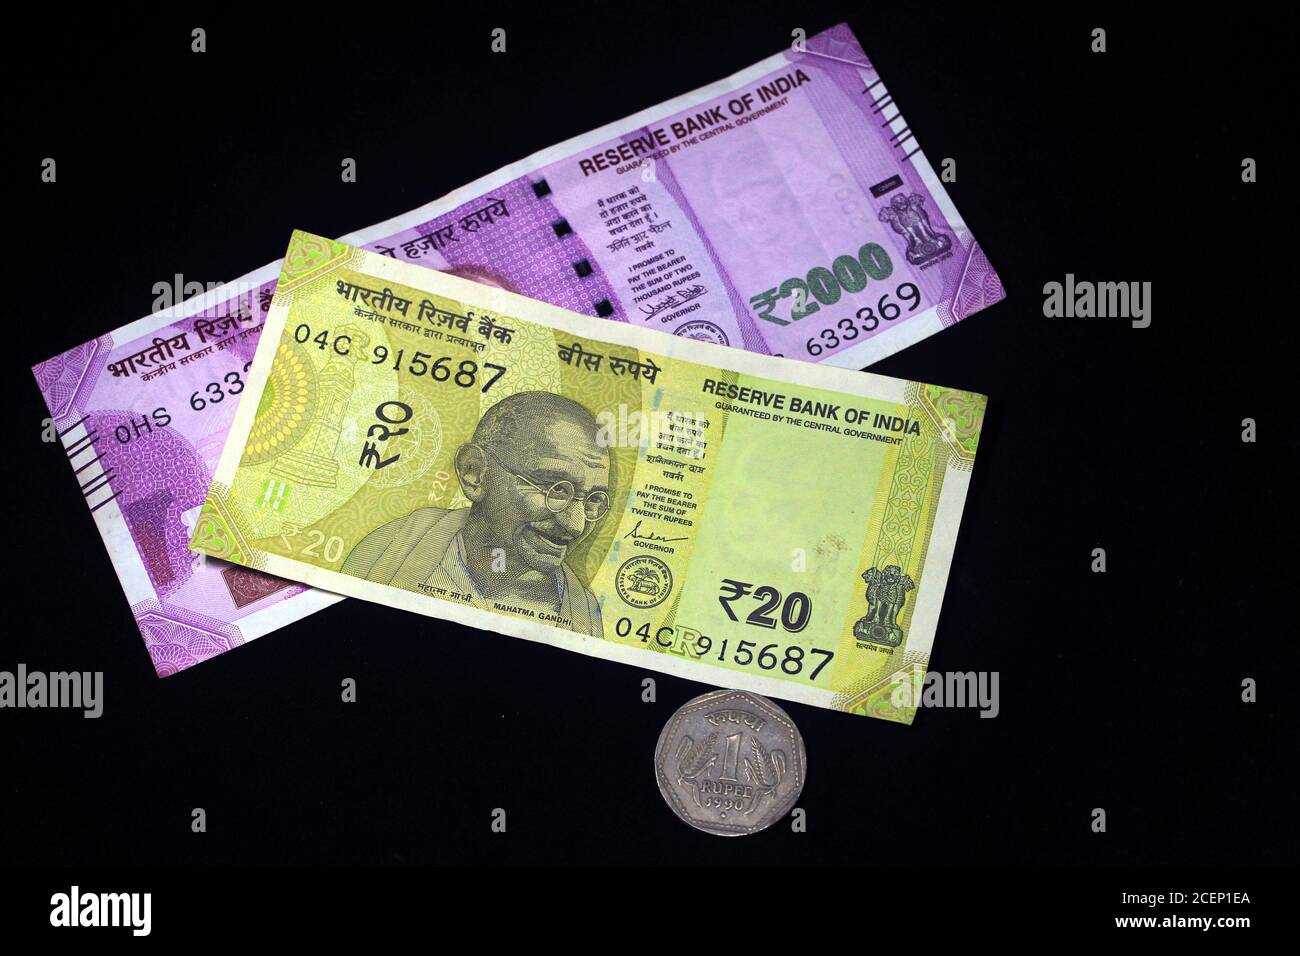 Indisches Geld mit 2021 Neujahr Konzept auf schwarzem Hintergrund. Konzept des neuen Jahres 2021 mit indischer Währung. Indische Währungen auf schwarzem Hintergrund. Stockfoto